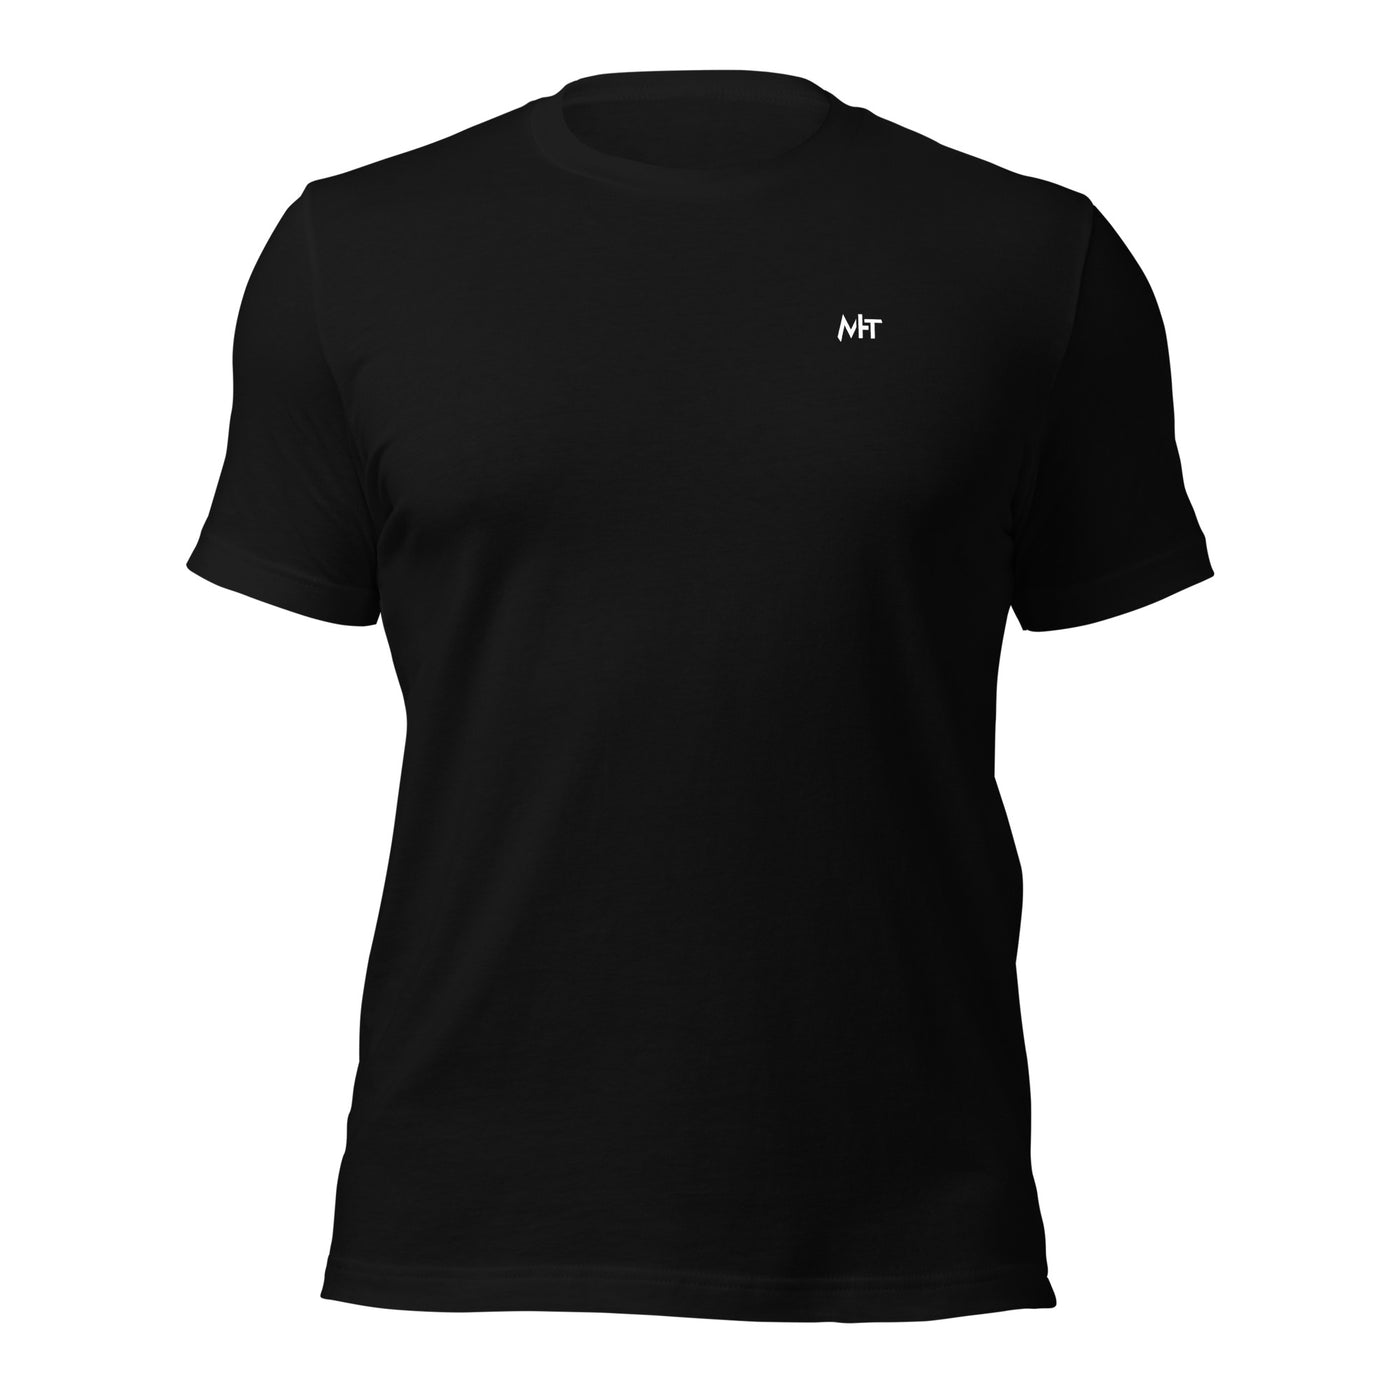 Developer Mode On - Unisex t-shirt (back print)